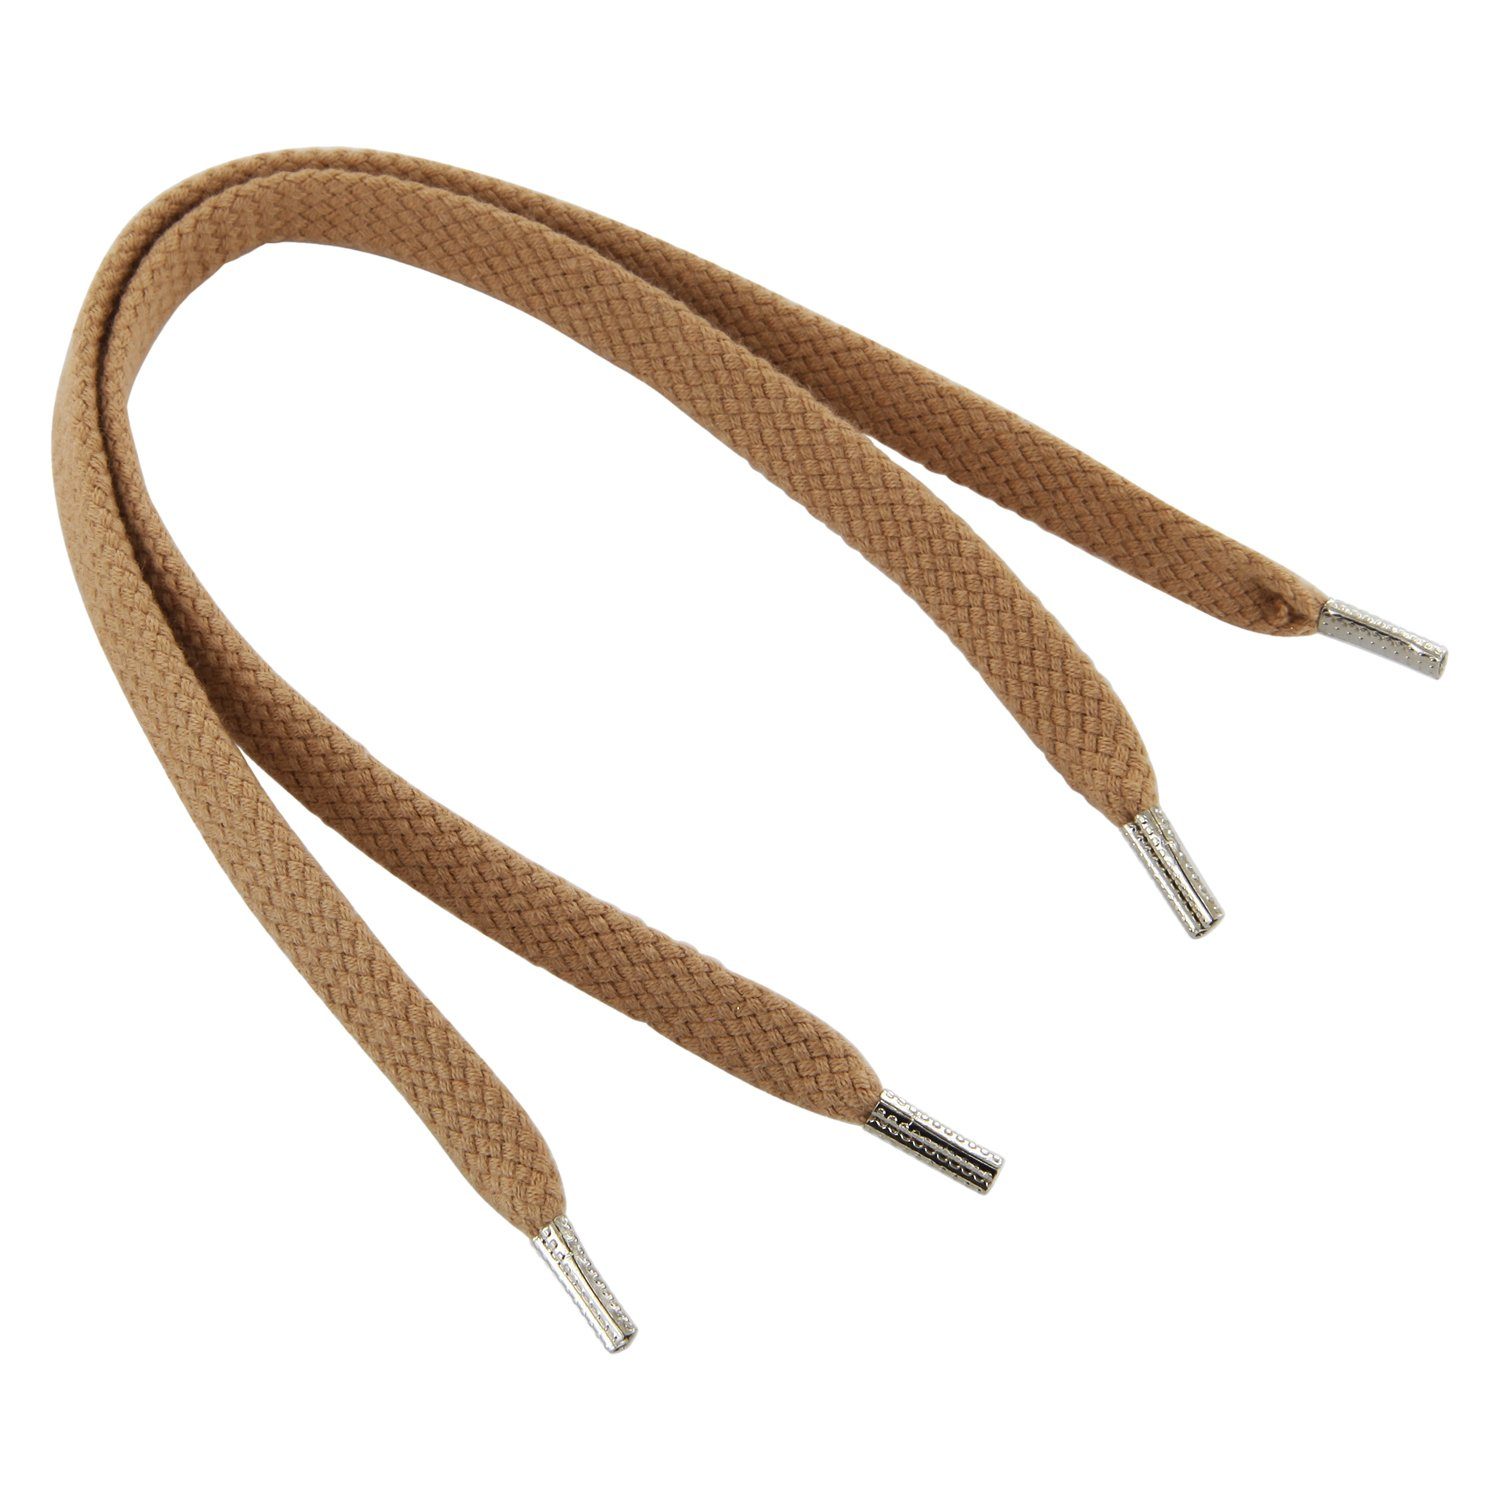 Rema Schnürsenkel Rema Schnürsenkel Camel - flach - ca. 6-7 mm breit für Sie nach Wunschlänge geschnitten und mit Metallenden versehen | Schnürsenkel